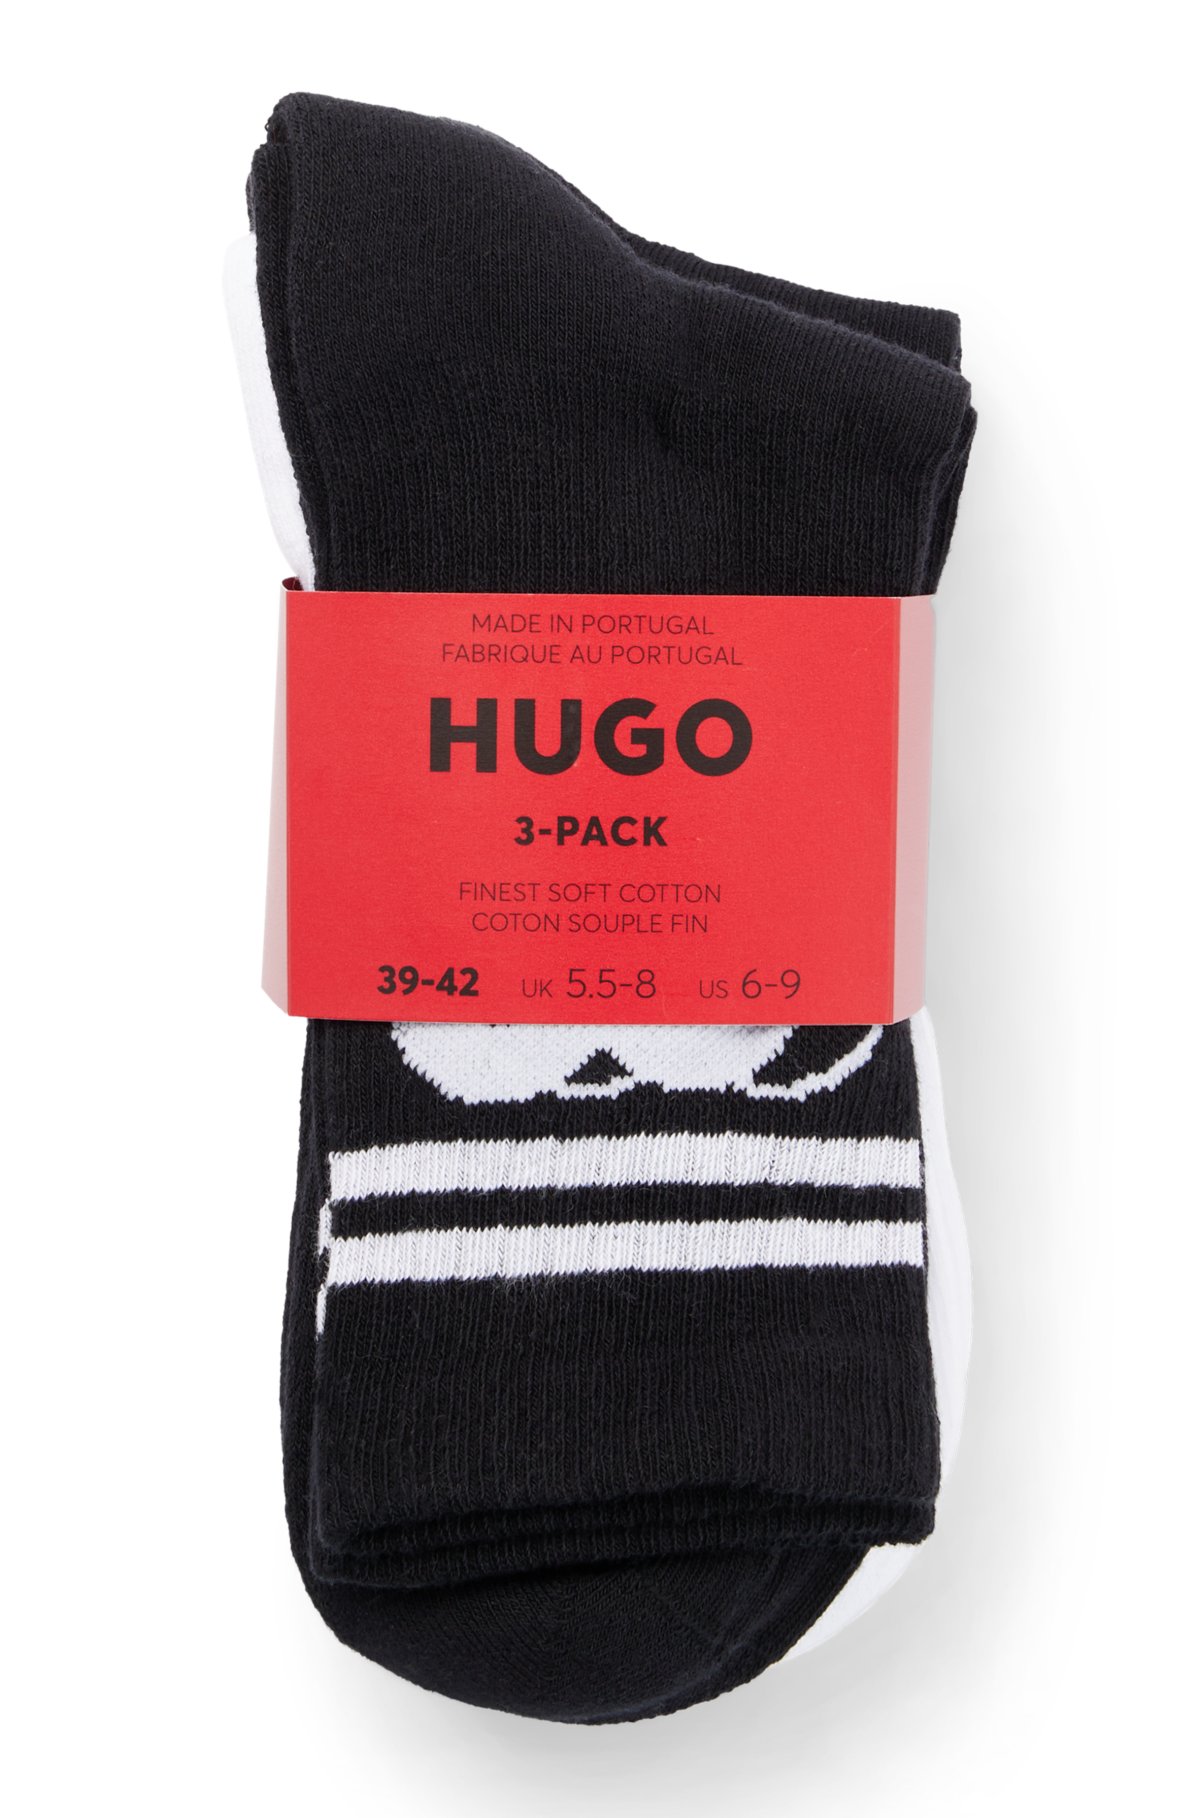 Socken mit der Dreier-Pack HUGO Logos - neuen Saison im